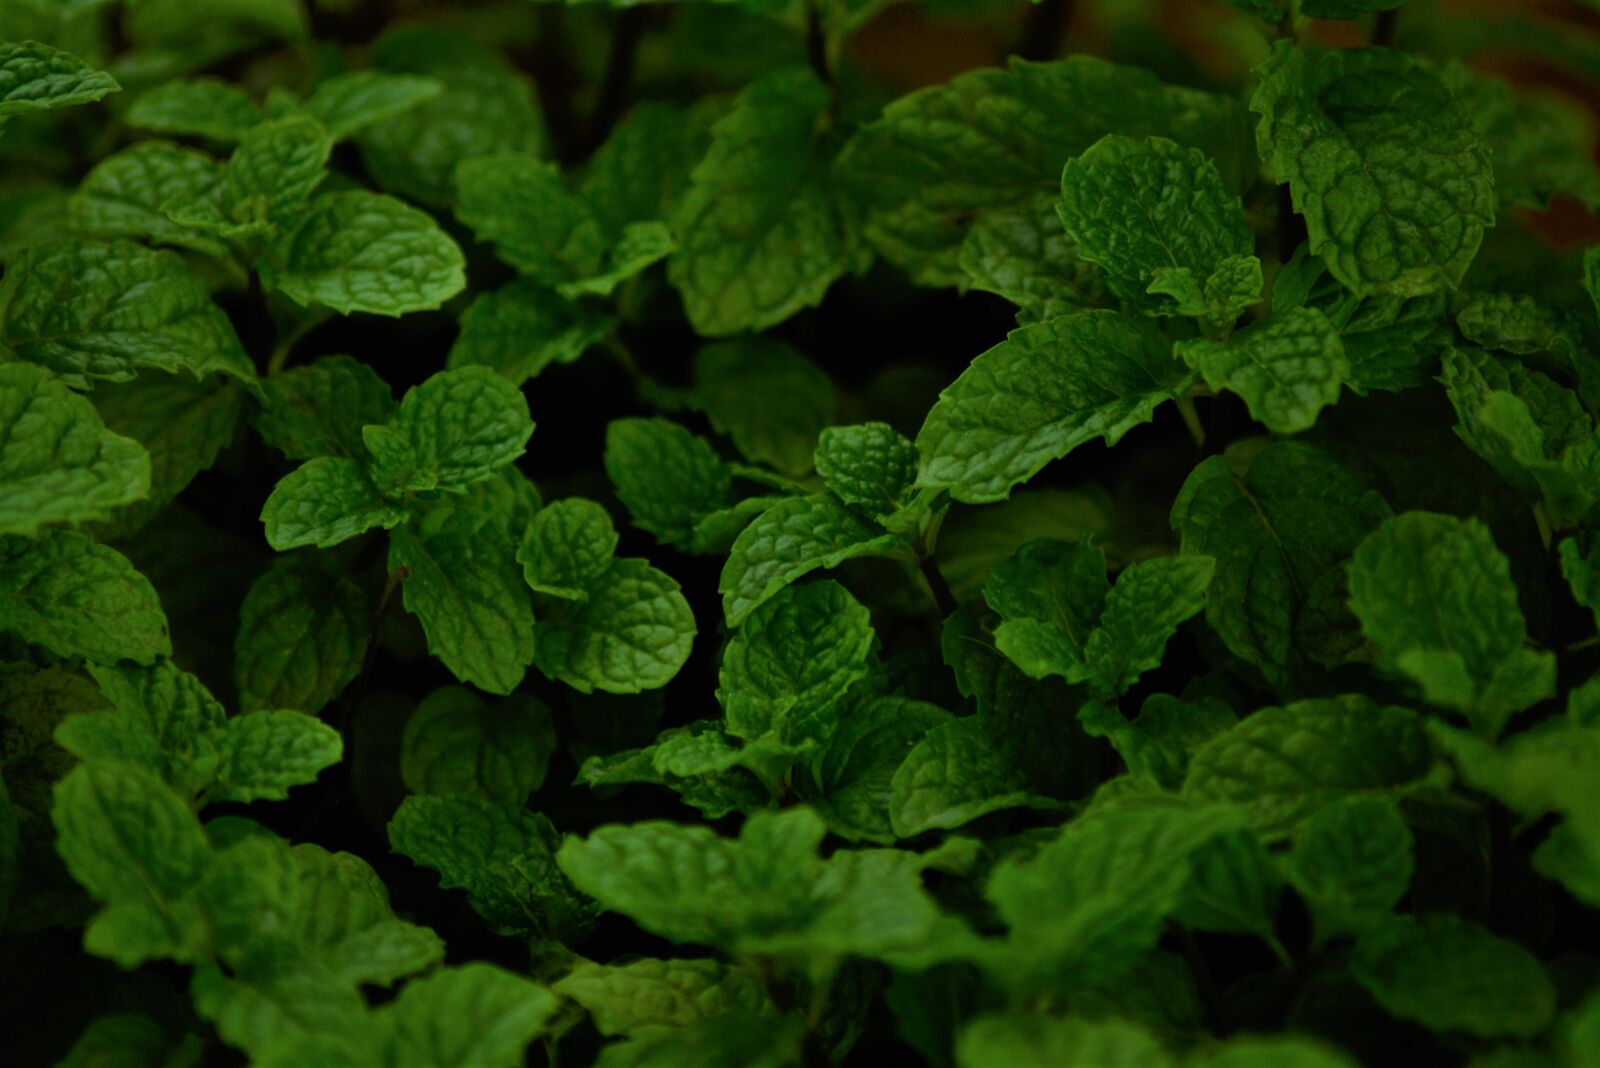 Nikon AF Nikkor 70-300mm F4-5.6G sample photo. Fresh, green, leaves, mint photography